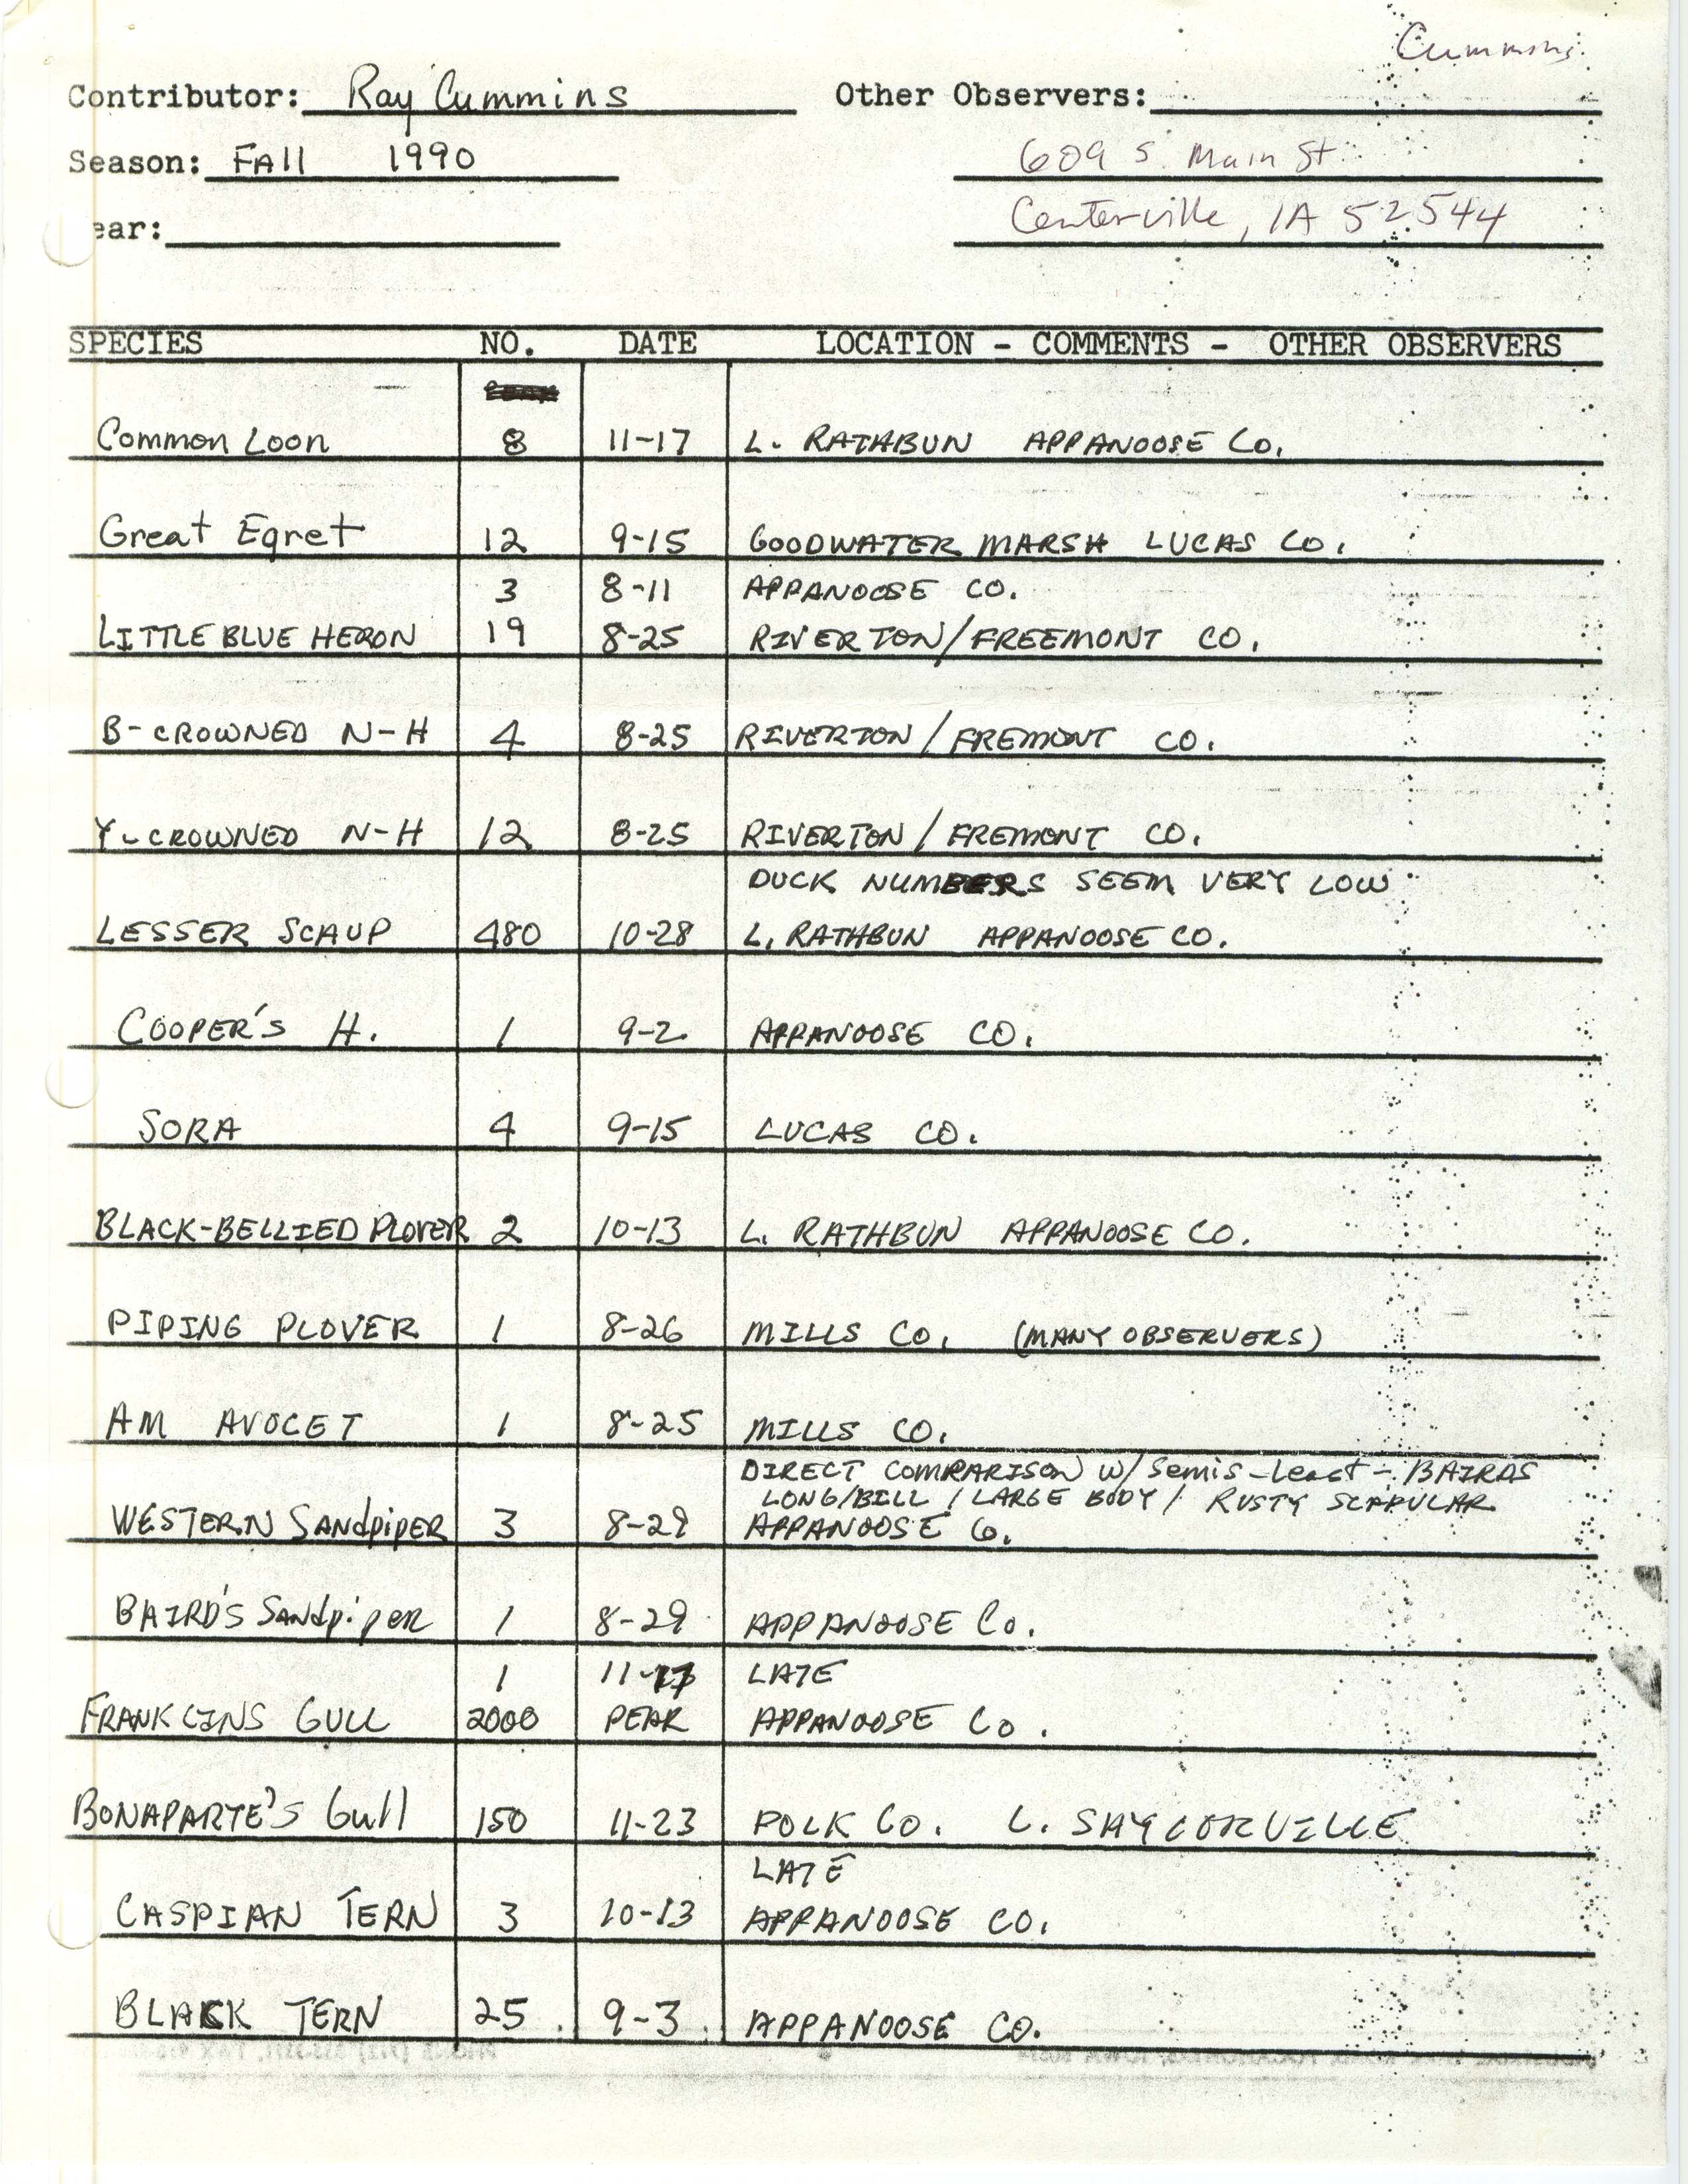 Field reports, Ray Cummins, fall 1990